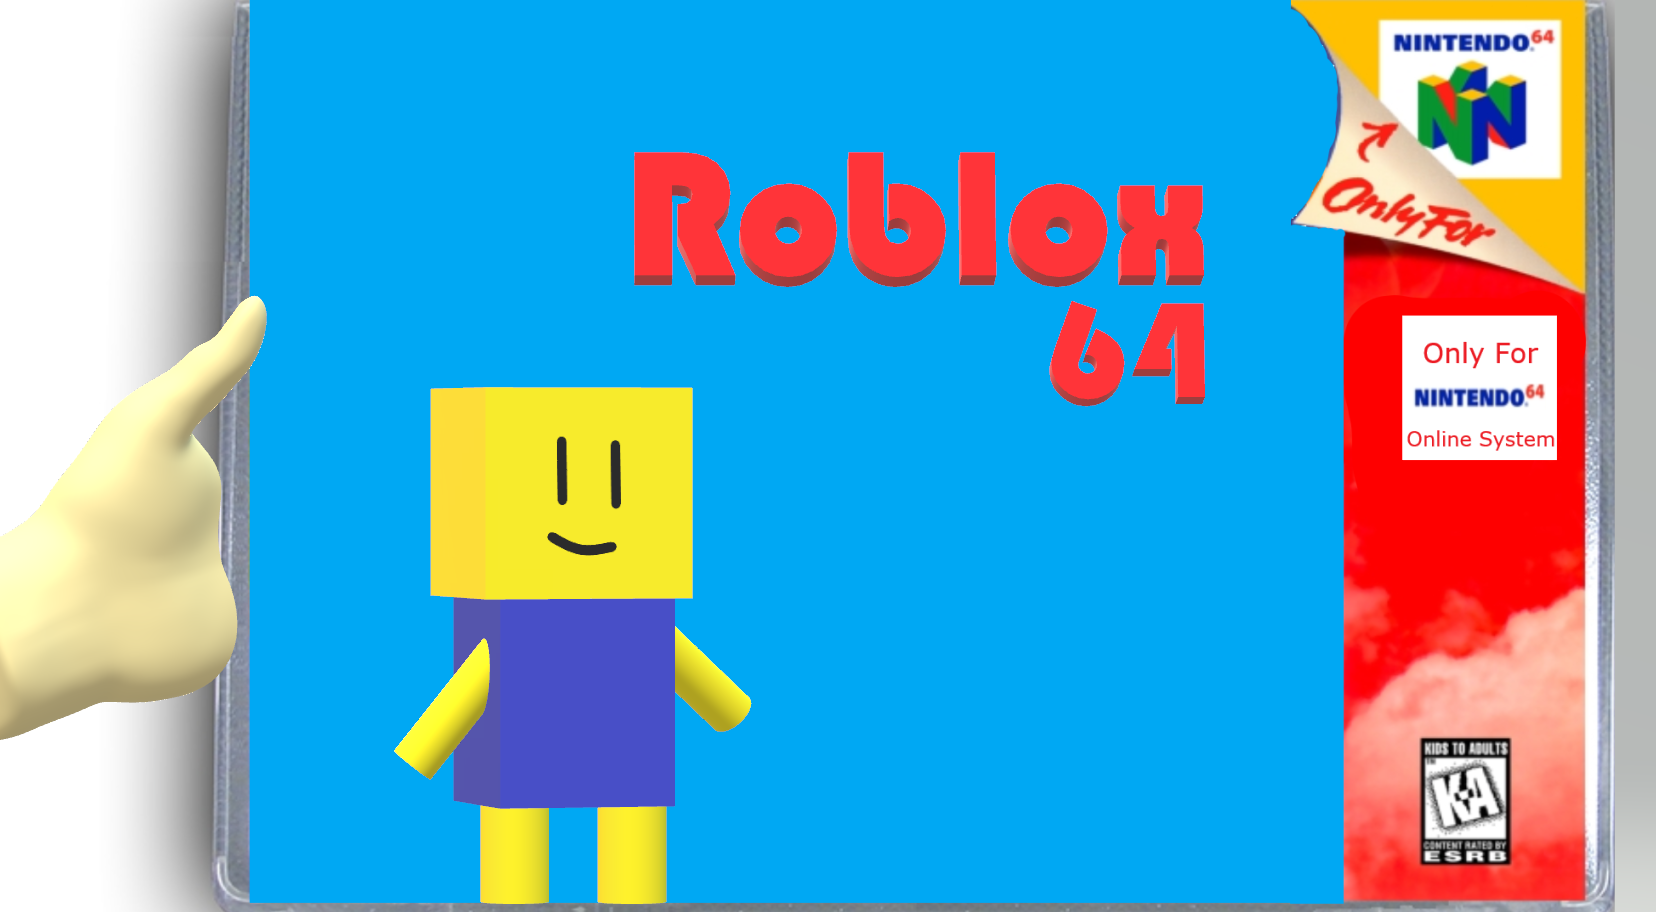 Hack~ Roblox 64 (Nintendo 64) · RetroAchievements